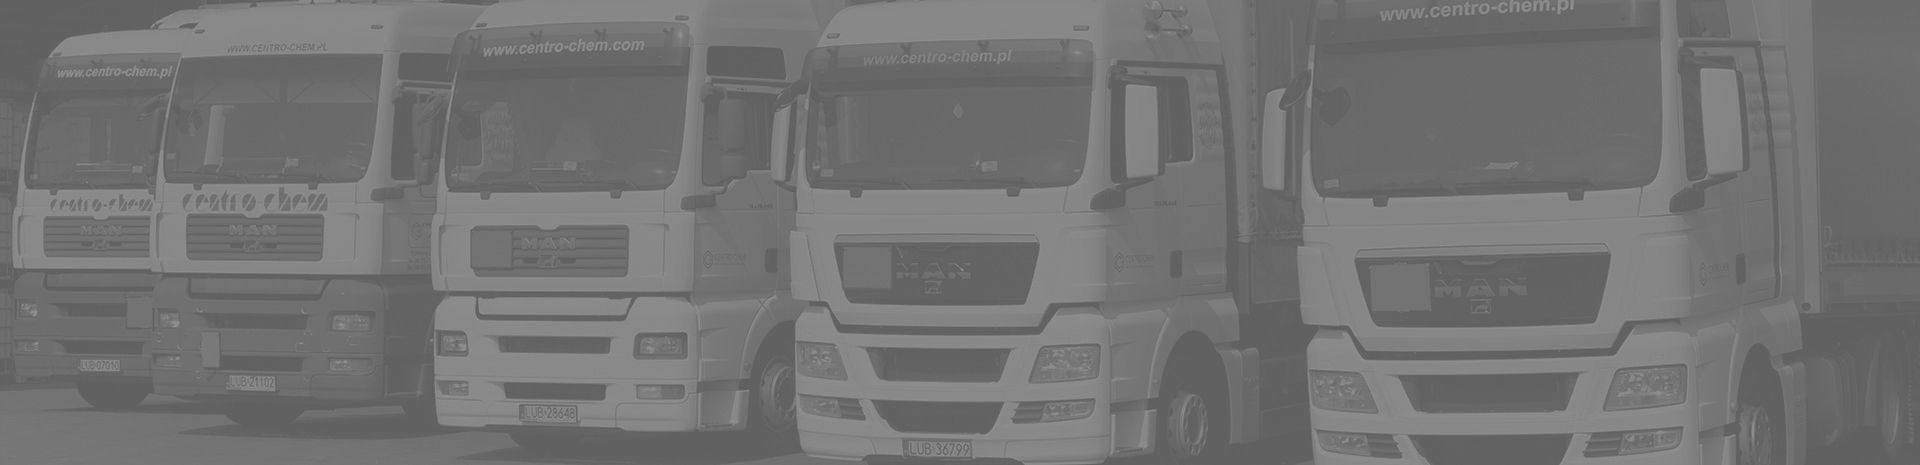 Własna flota samochodów ciężarowych  Skontaktuj się z nami